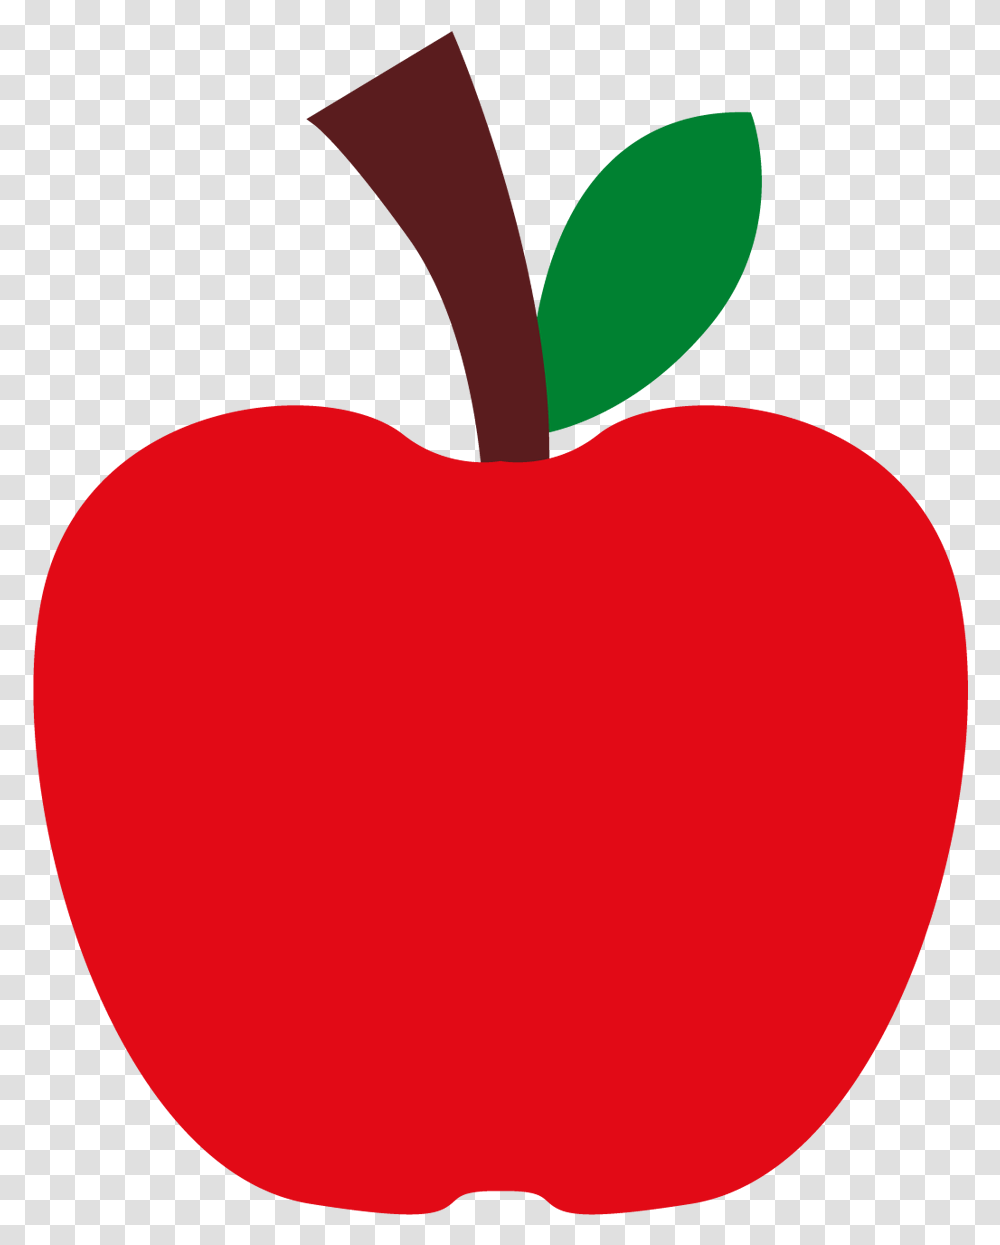 Da Branca De Neve Recorte Grtis Clipart Apple Snow White, Plant, Fruit, Food, Balloon Transparent Png